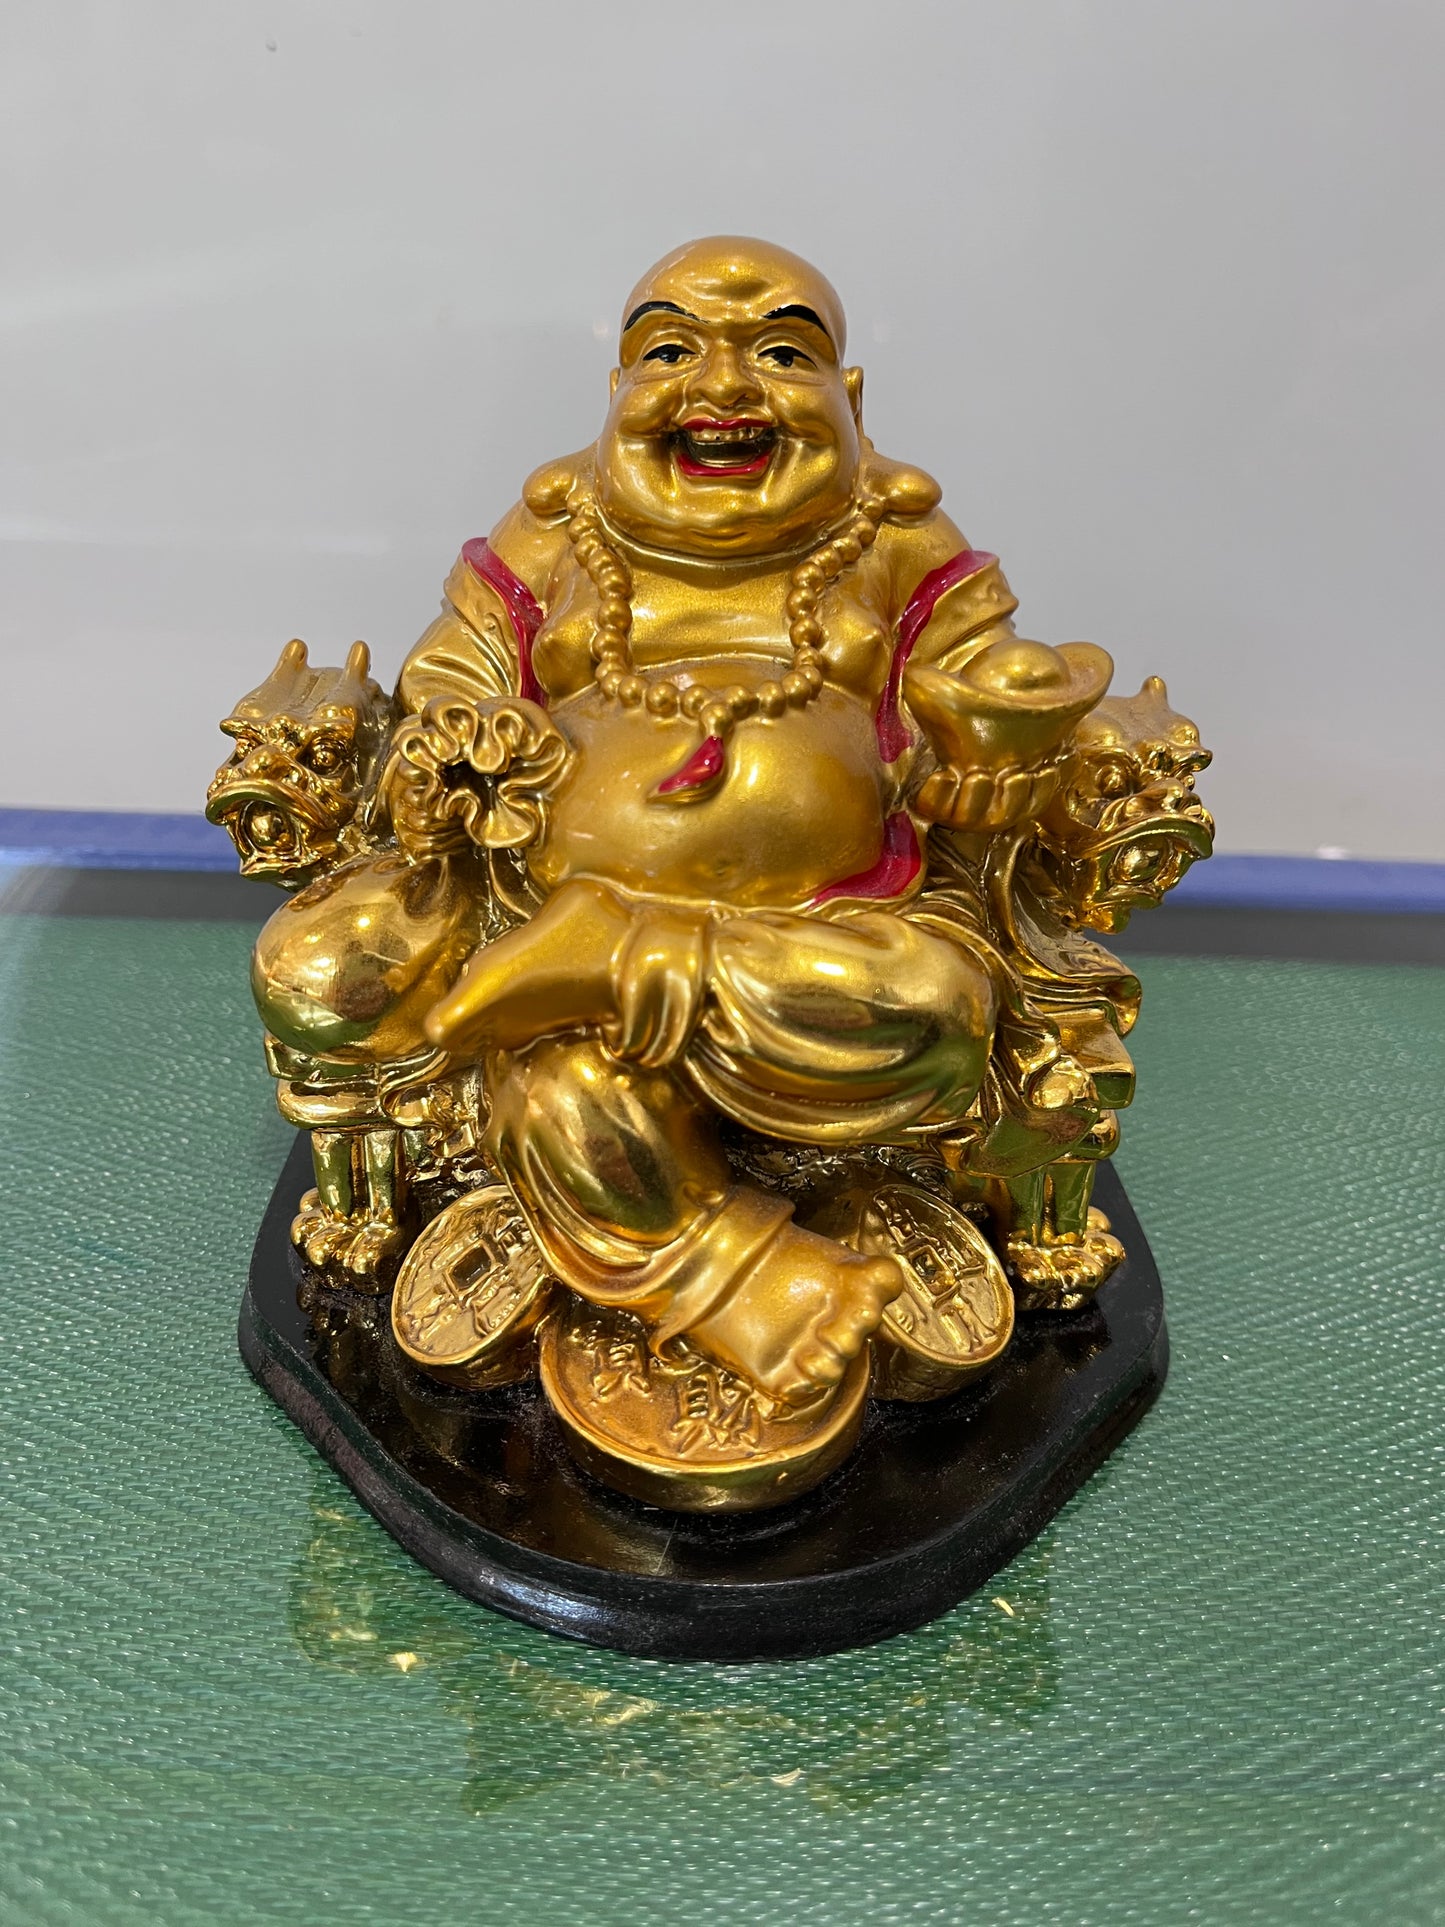 Golden Buddha on golden coins